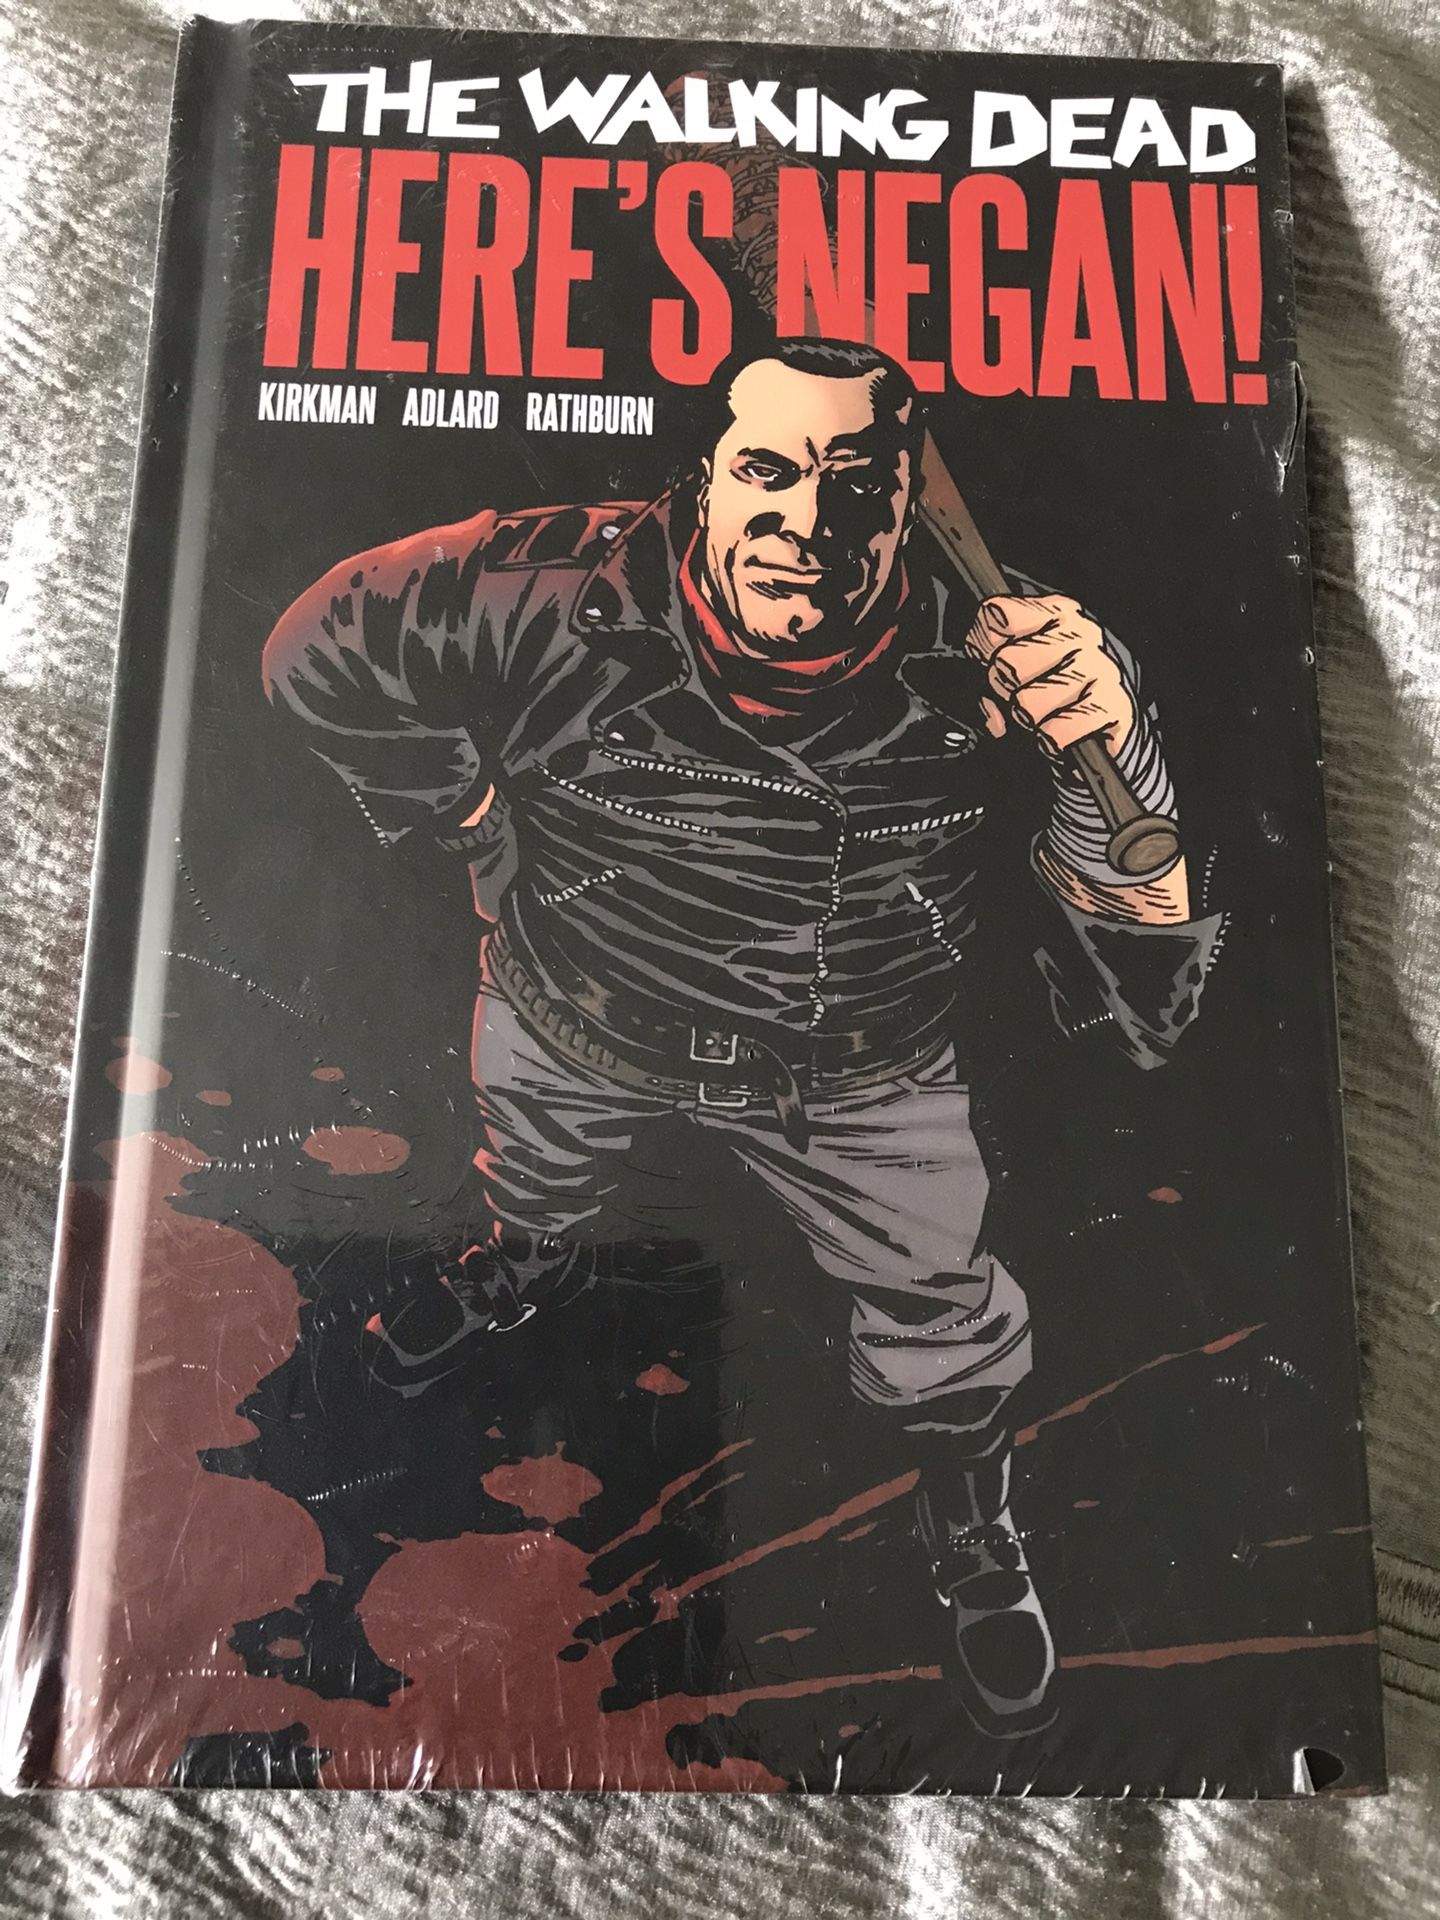 The Walking Dead: Here’s Negan Hardcover Graphic Novel (FYE exclusive)